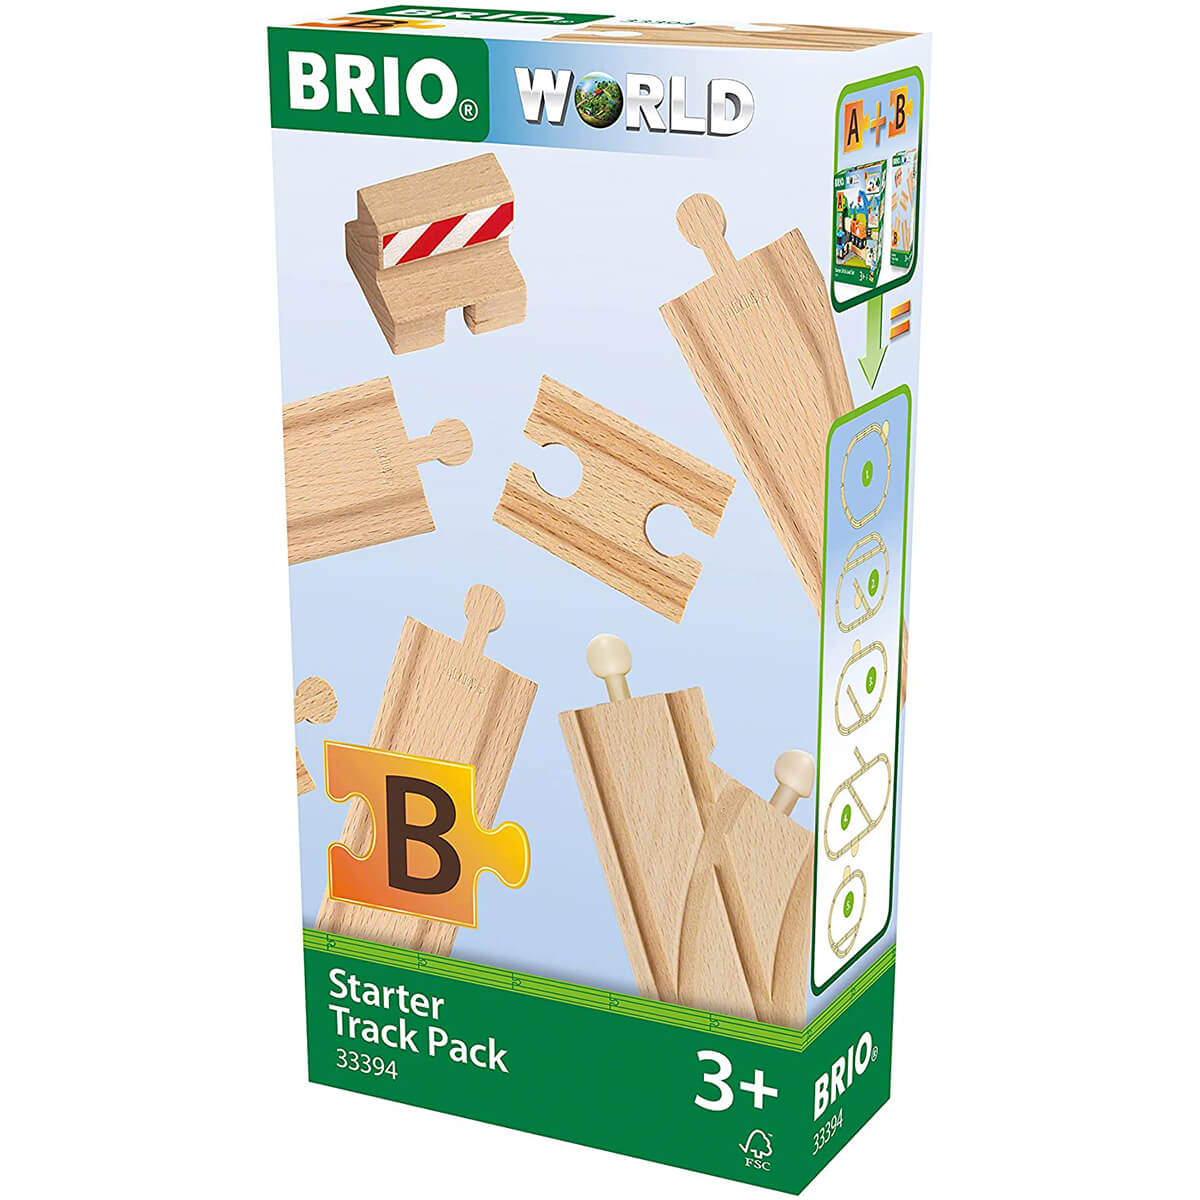 BRIO World Starter Track Pack Wooden Train Pieces (33394)